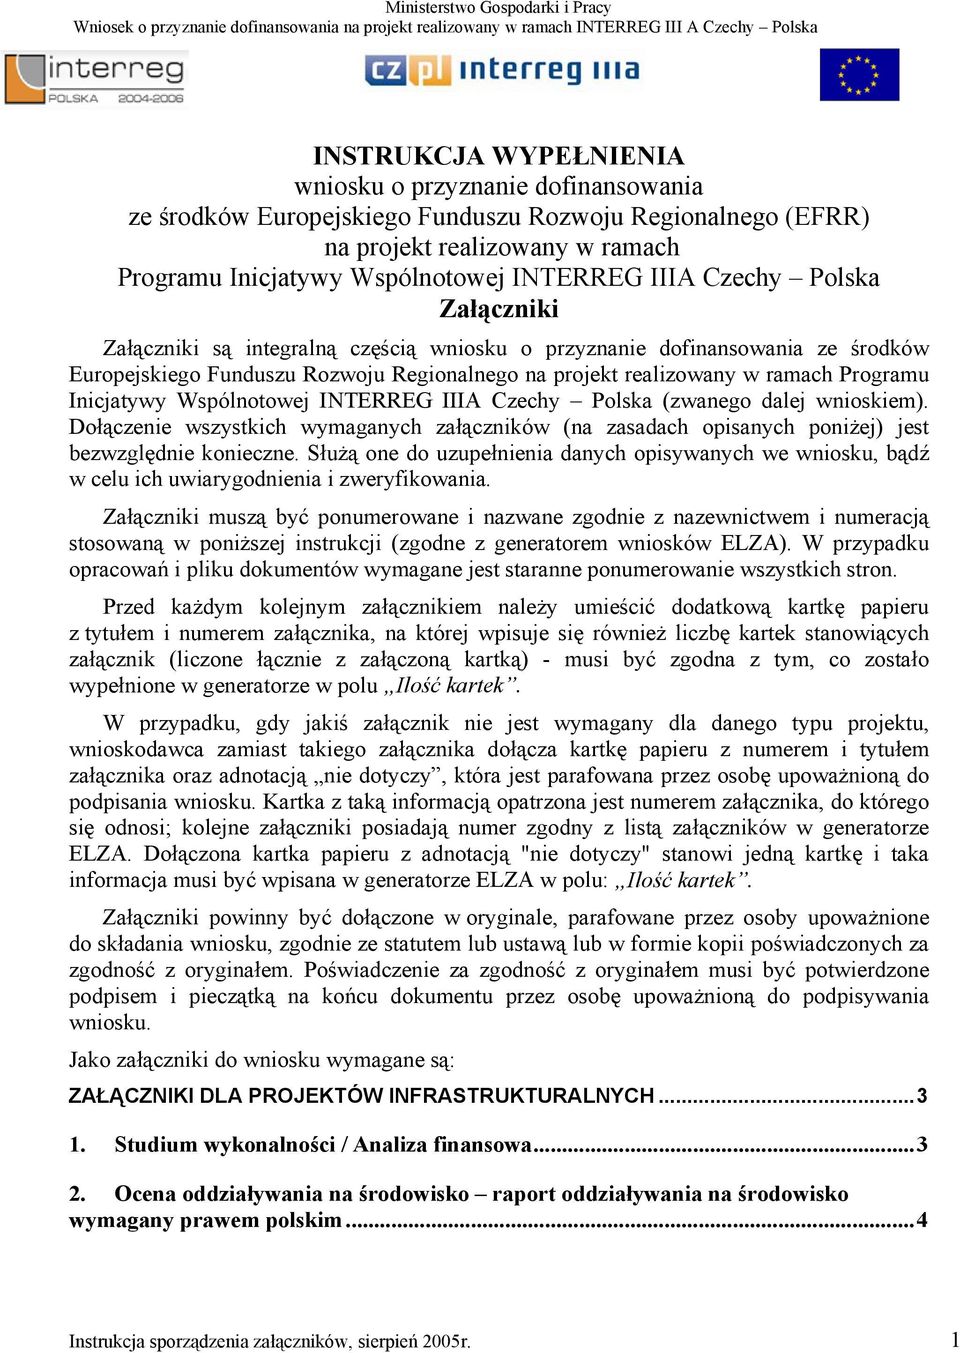 Inicjatywy Wspólnotowej INTERREG IIIA Czechy Polska (zwanego dalej wnioskiem). Dołączenie wszystkich wymaganych załączników (na zasadach opisanych poniżej) jest bezwzględnie konieczne.